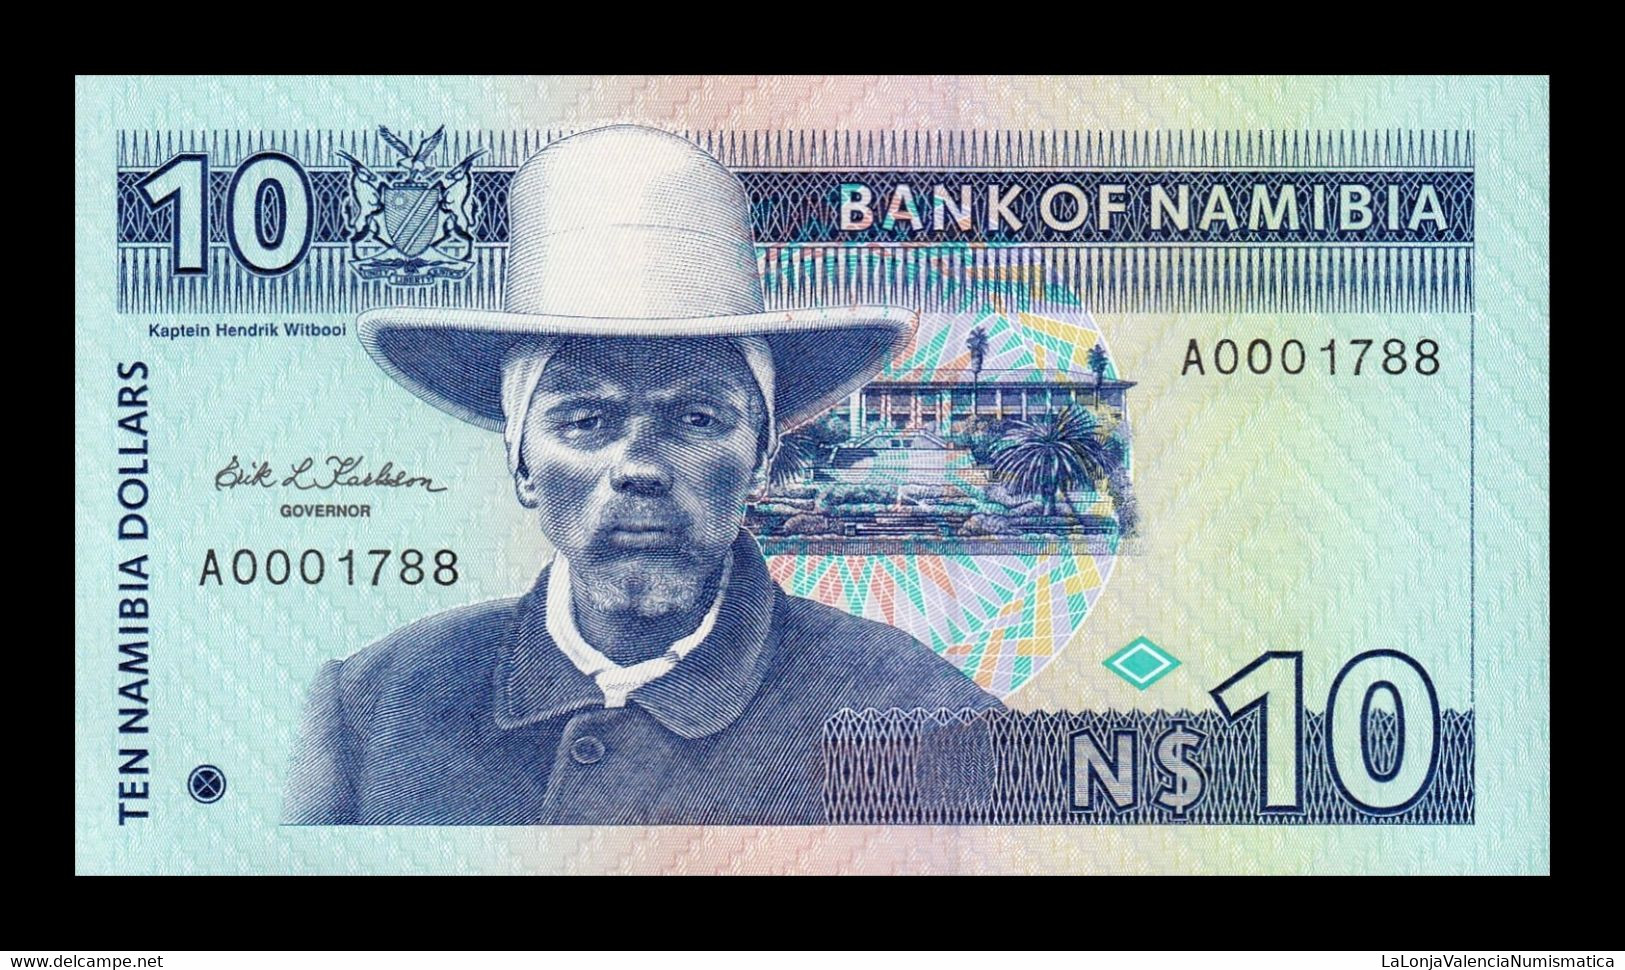 Namibia 10 Dollars 1993 Pick 1 Low Serial SC UNC - Namibië